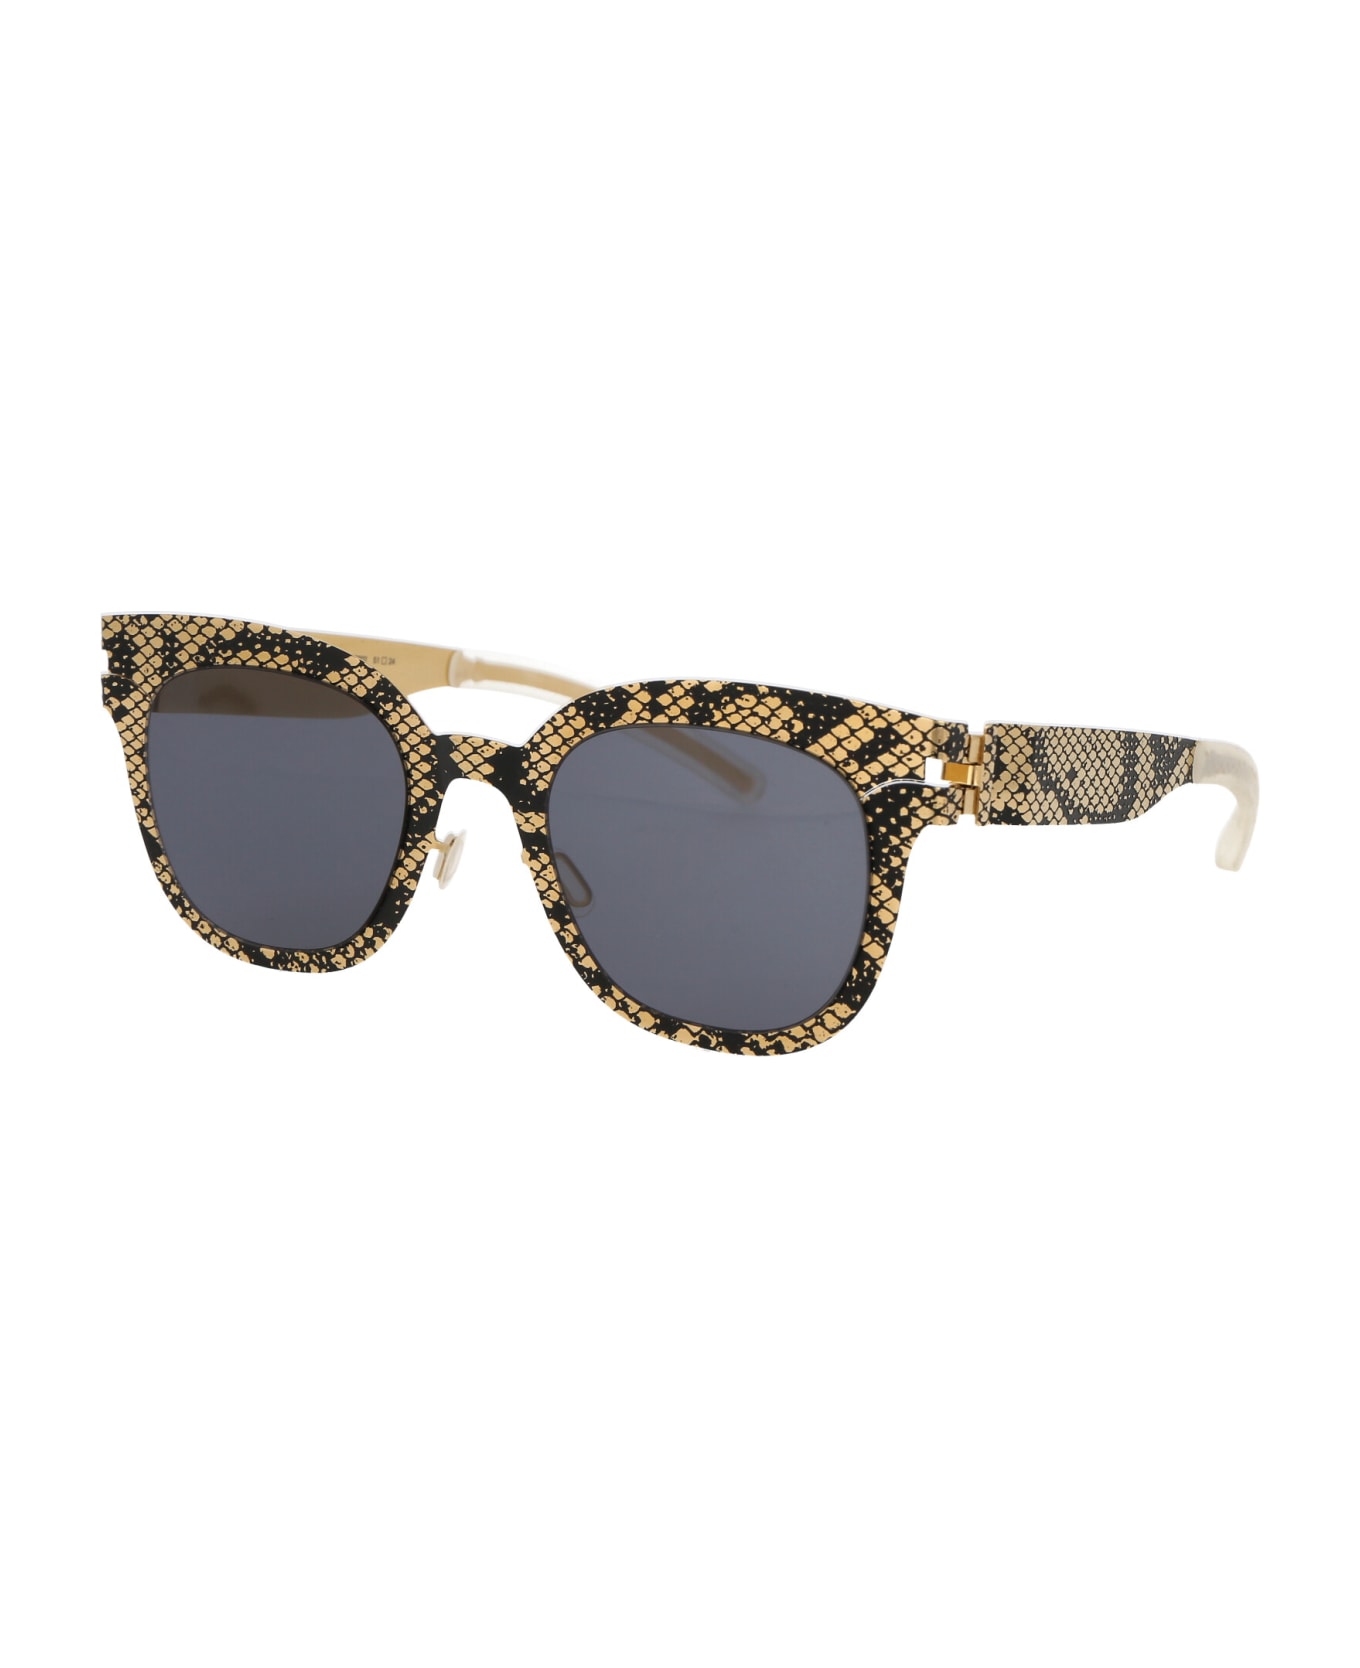 Mykita Mmtransfer002 Sunglasses - 239 Gold Black Python Dark Grey Solid サングラス